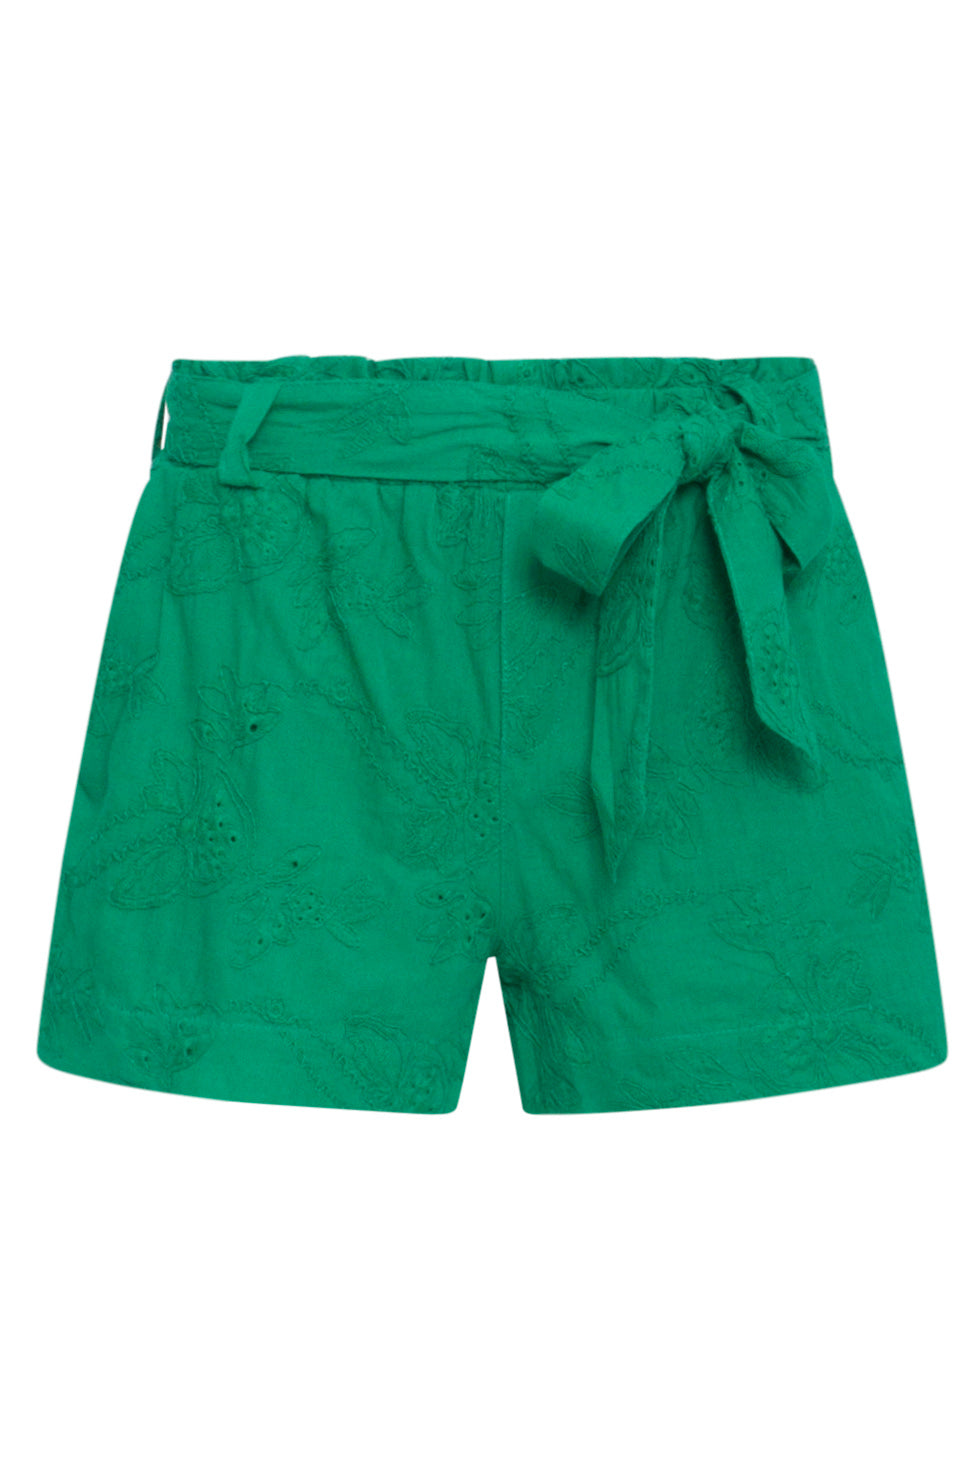 24111 Bloemen Geborduurde Shorts Emerald Groen